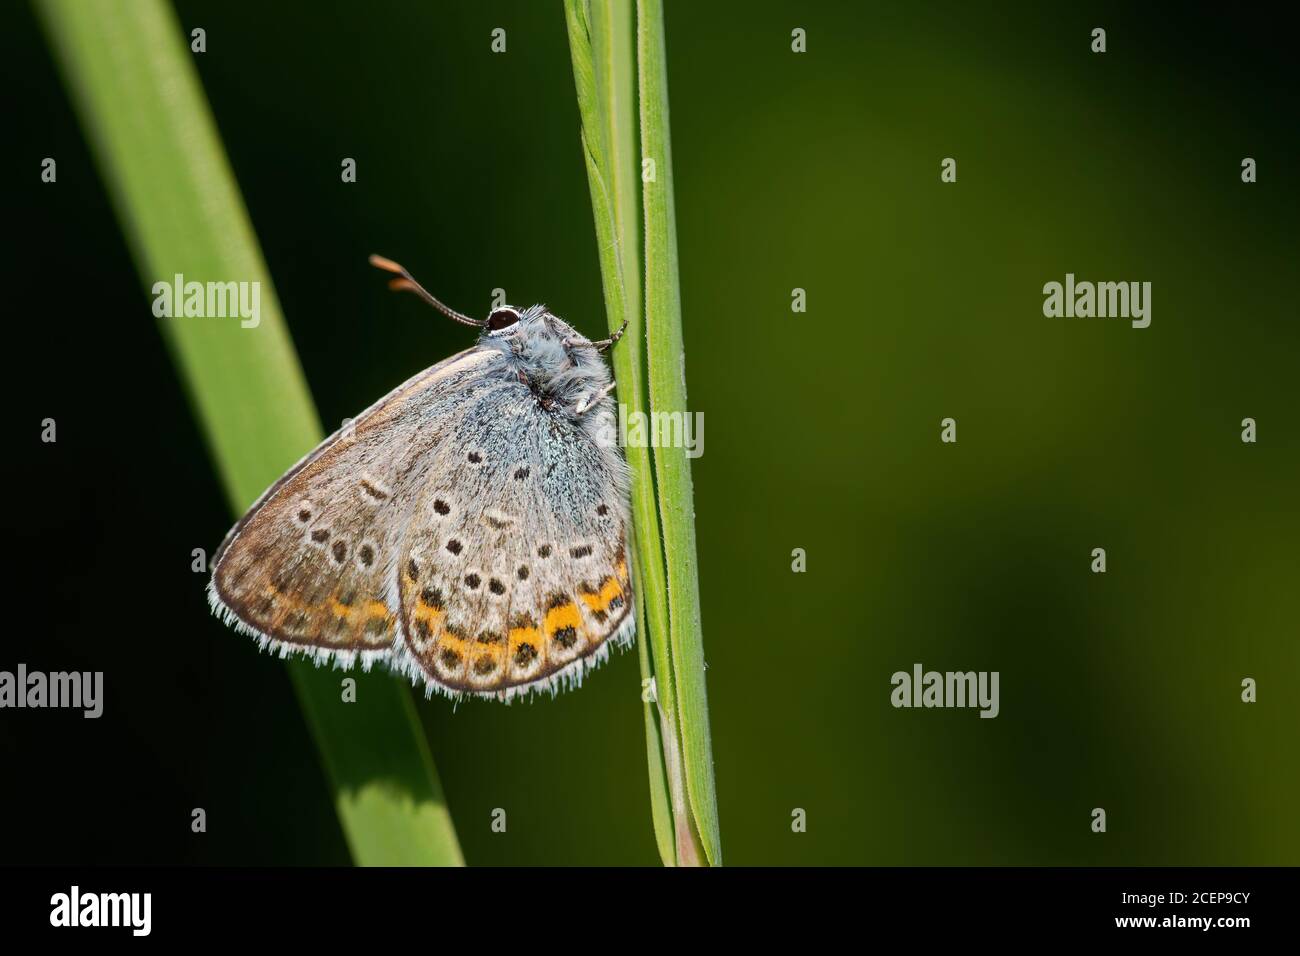 Farfalla blu di Reverdin - Plebejus argirognomon, bella piccola farfalla blu da prati e praterie europee, Zlin, Repubblica Ceca. Foto Stock